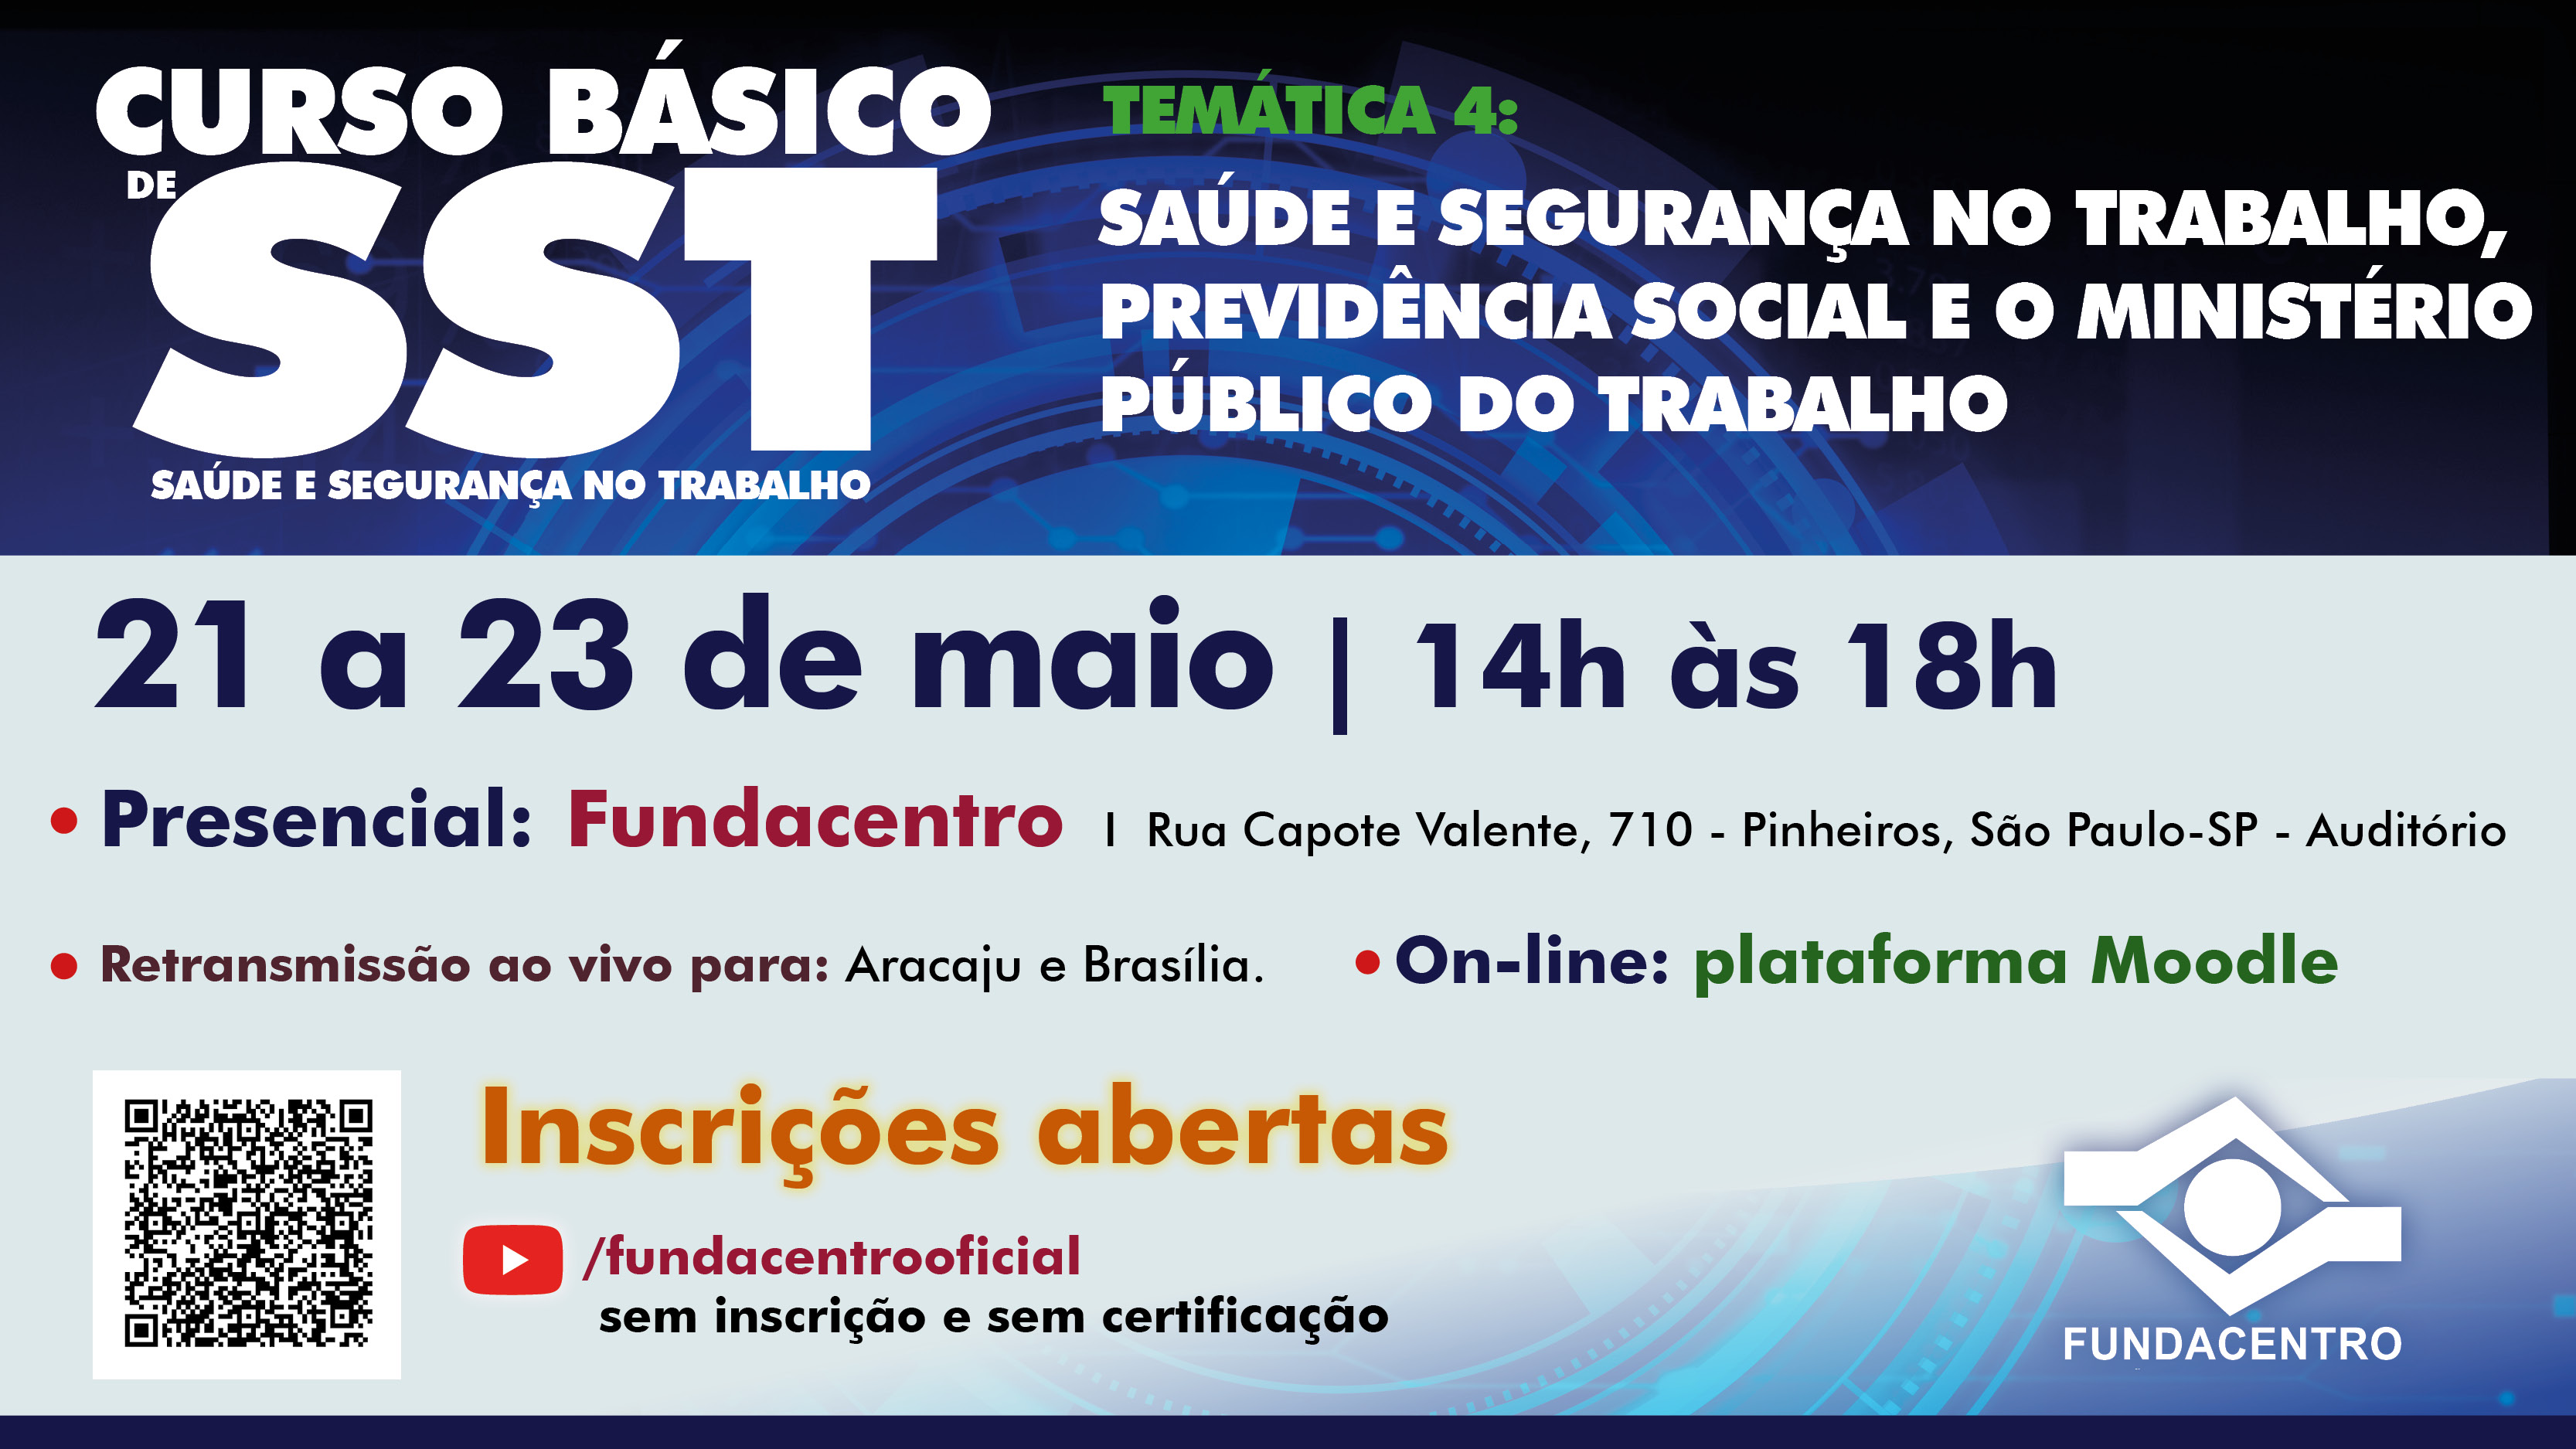 Aulas acontecem nos dias 21, 22 e 23 de maio, no formato presencial, on-line e serão retransmitidas para Aracaju e Brasília